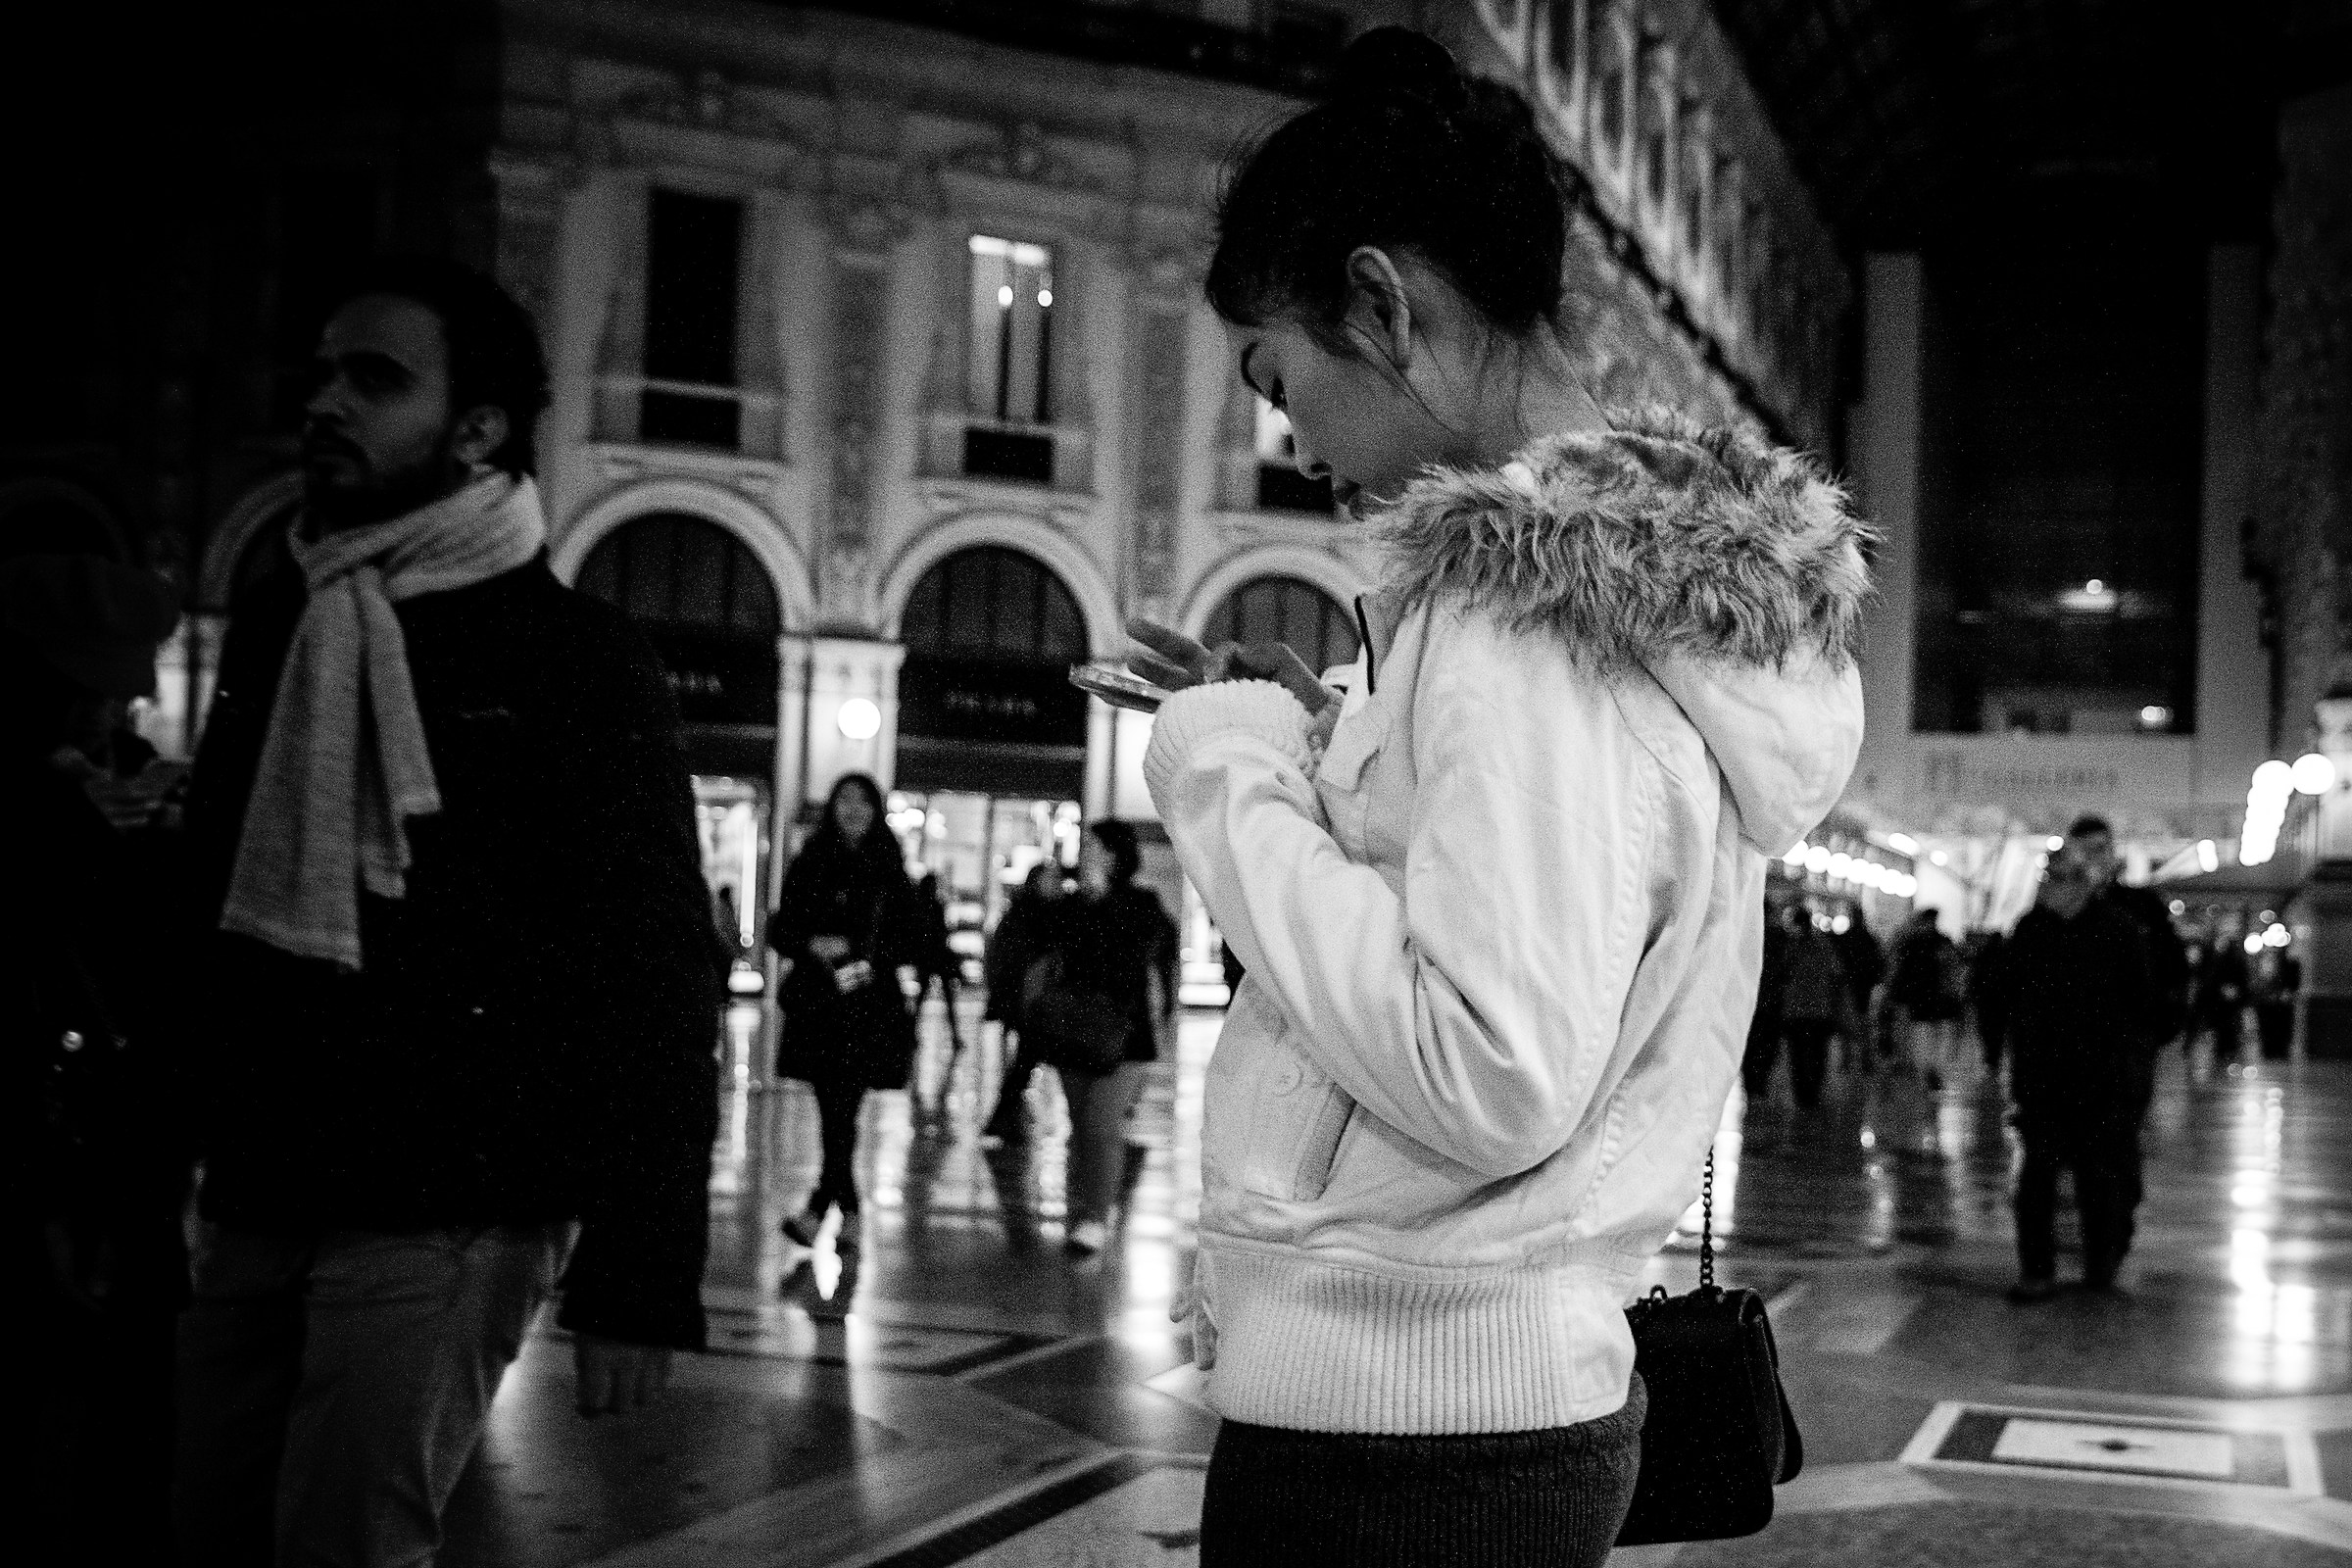 Milano_People (Galleria Vittorio Emanuele II 1/2)...